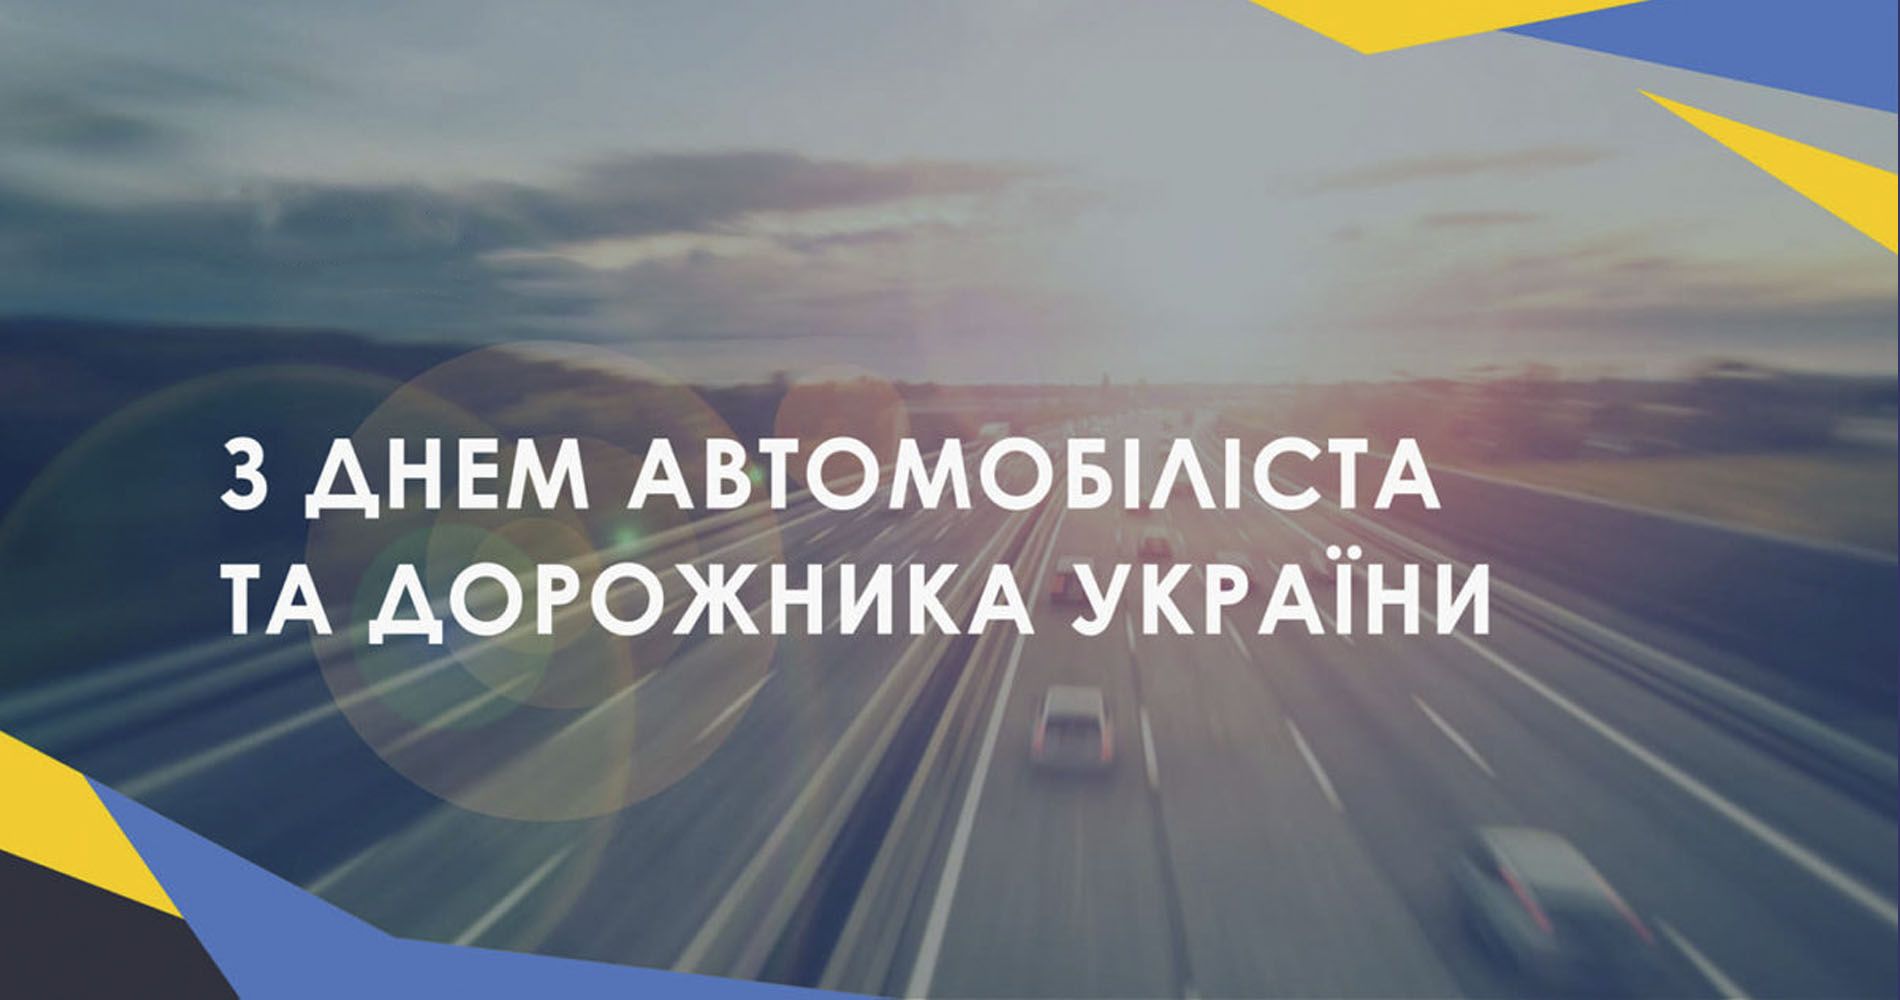 Вітання автомобілістам Дрогобиччини з професійним святом